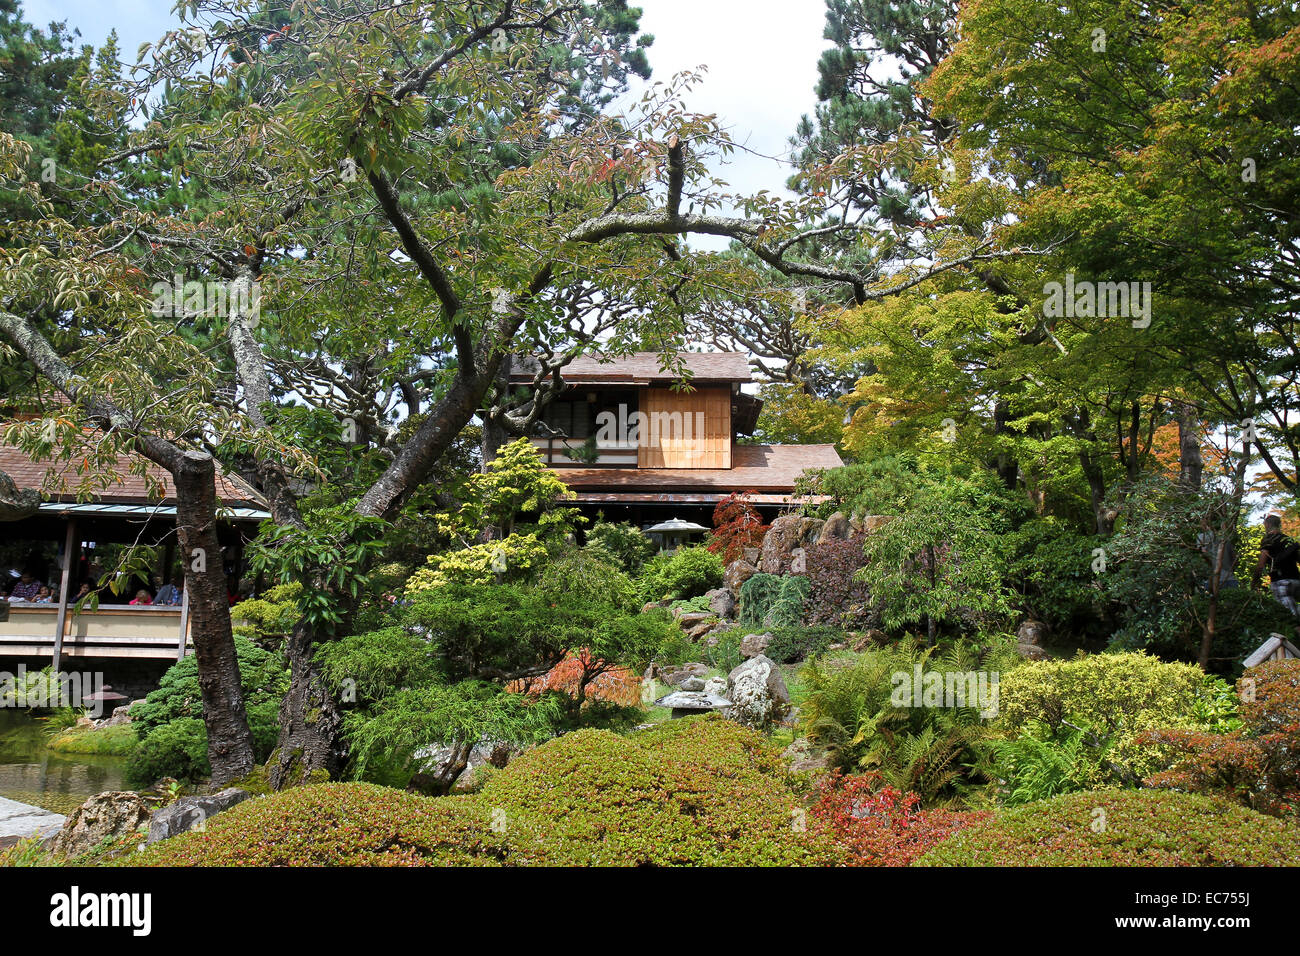 Japanese Tea Garden, le Golden Gate Park, San Francisco, Californie, Etats-Unis, Amérique du Nord Banque D'Images